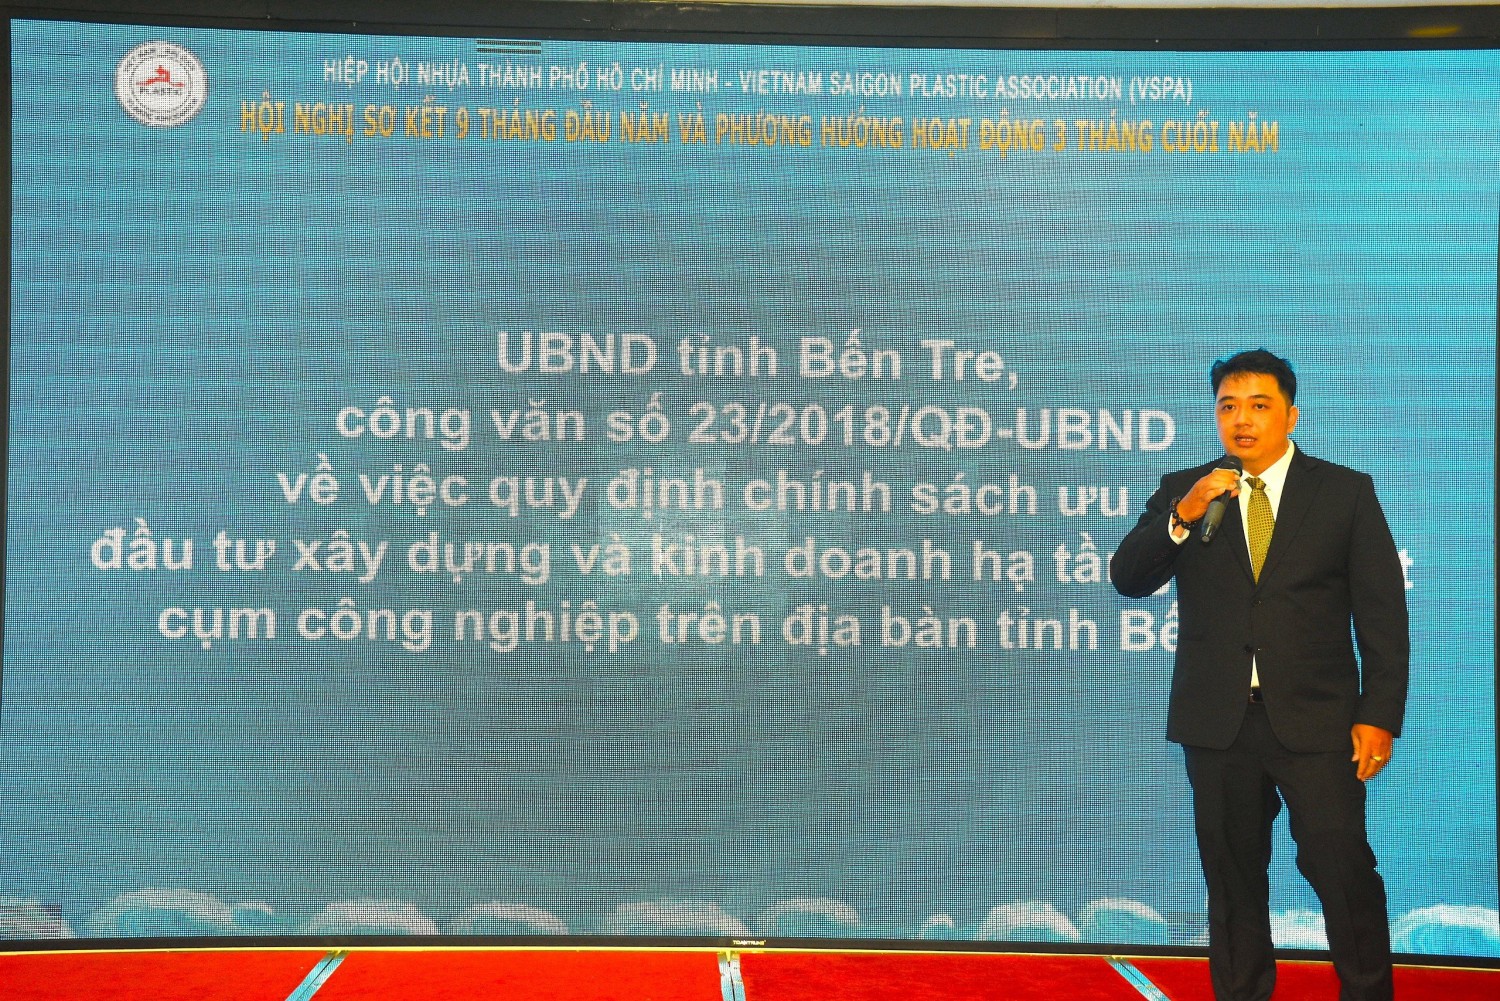 Ông Chung Tấn Cường – Chủ tịch Hiệp hội nhựa Tp. HCM công bố quyết định về các chính sách ưu đãi của ủy ban nhân dân tỉnh Bến Tre dành cho nhà đầu tư vào 2 cụm công nghiệp